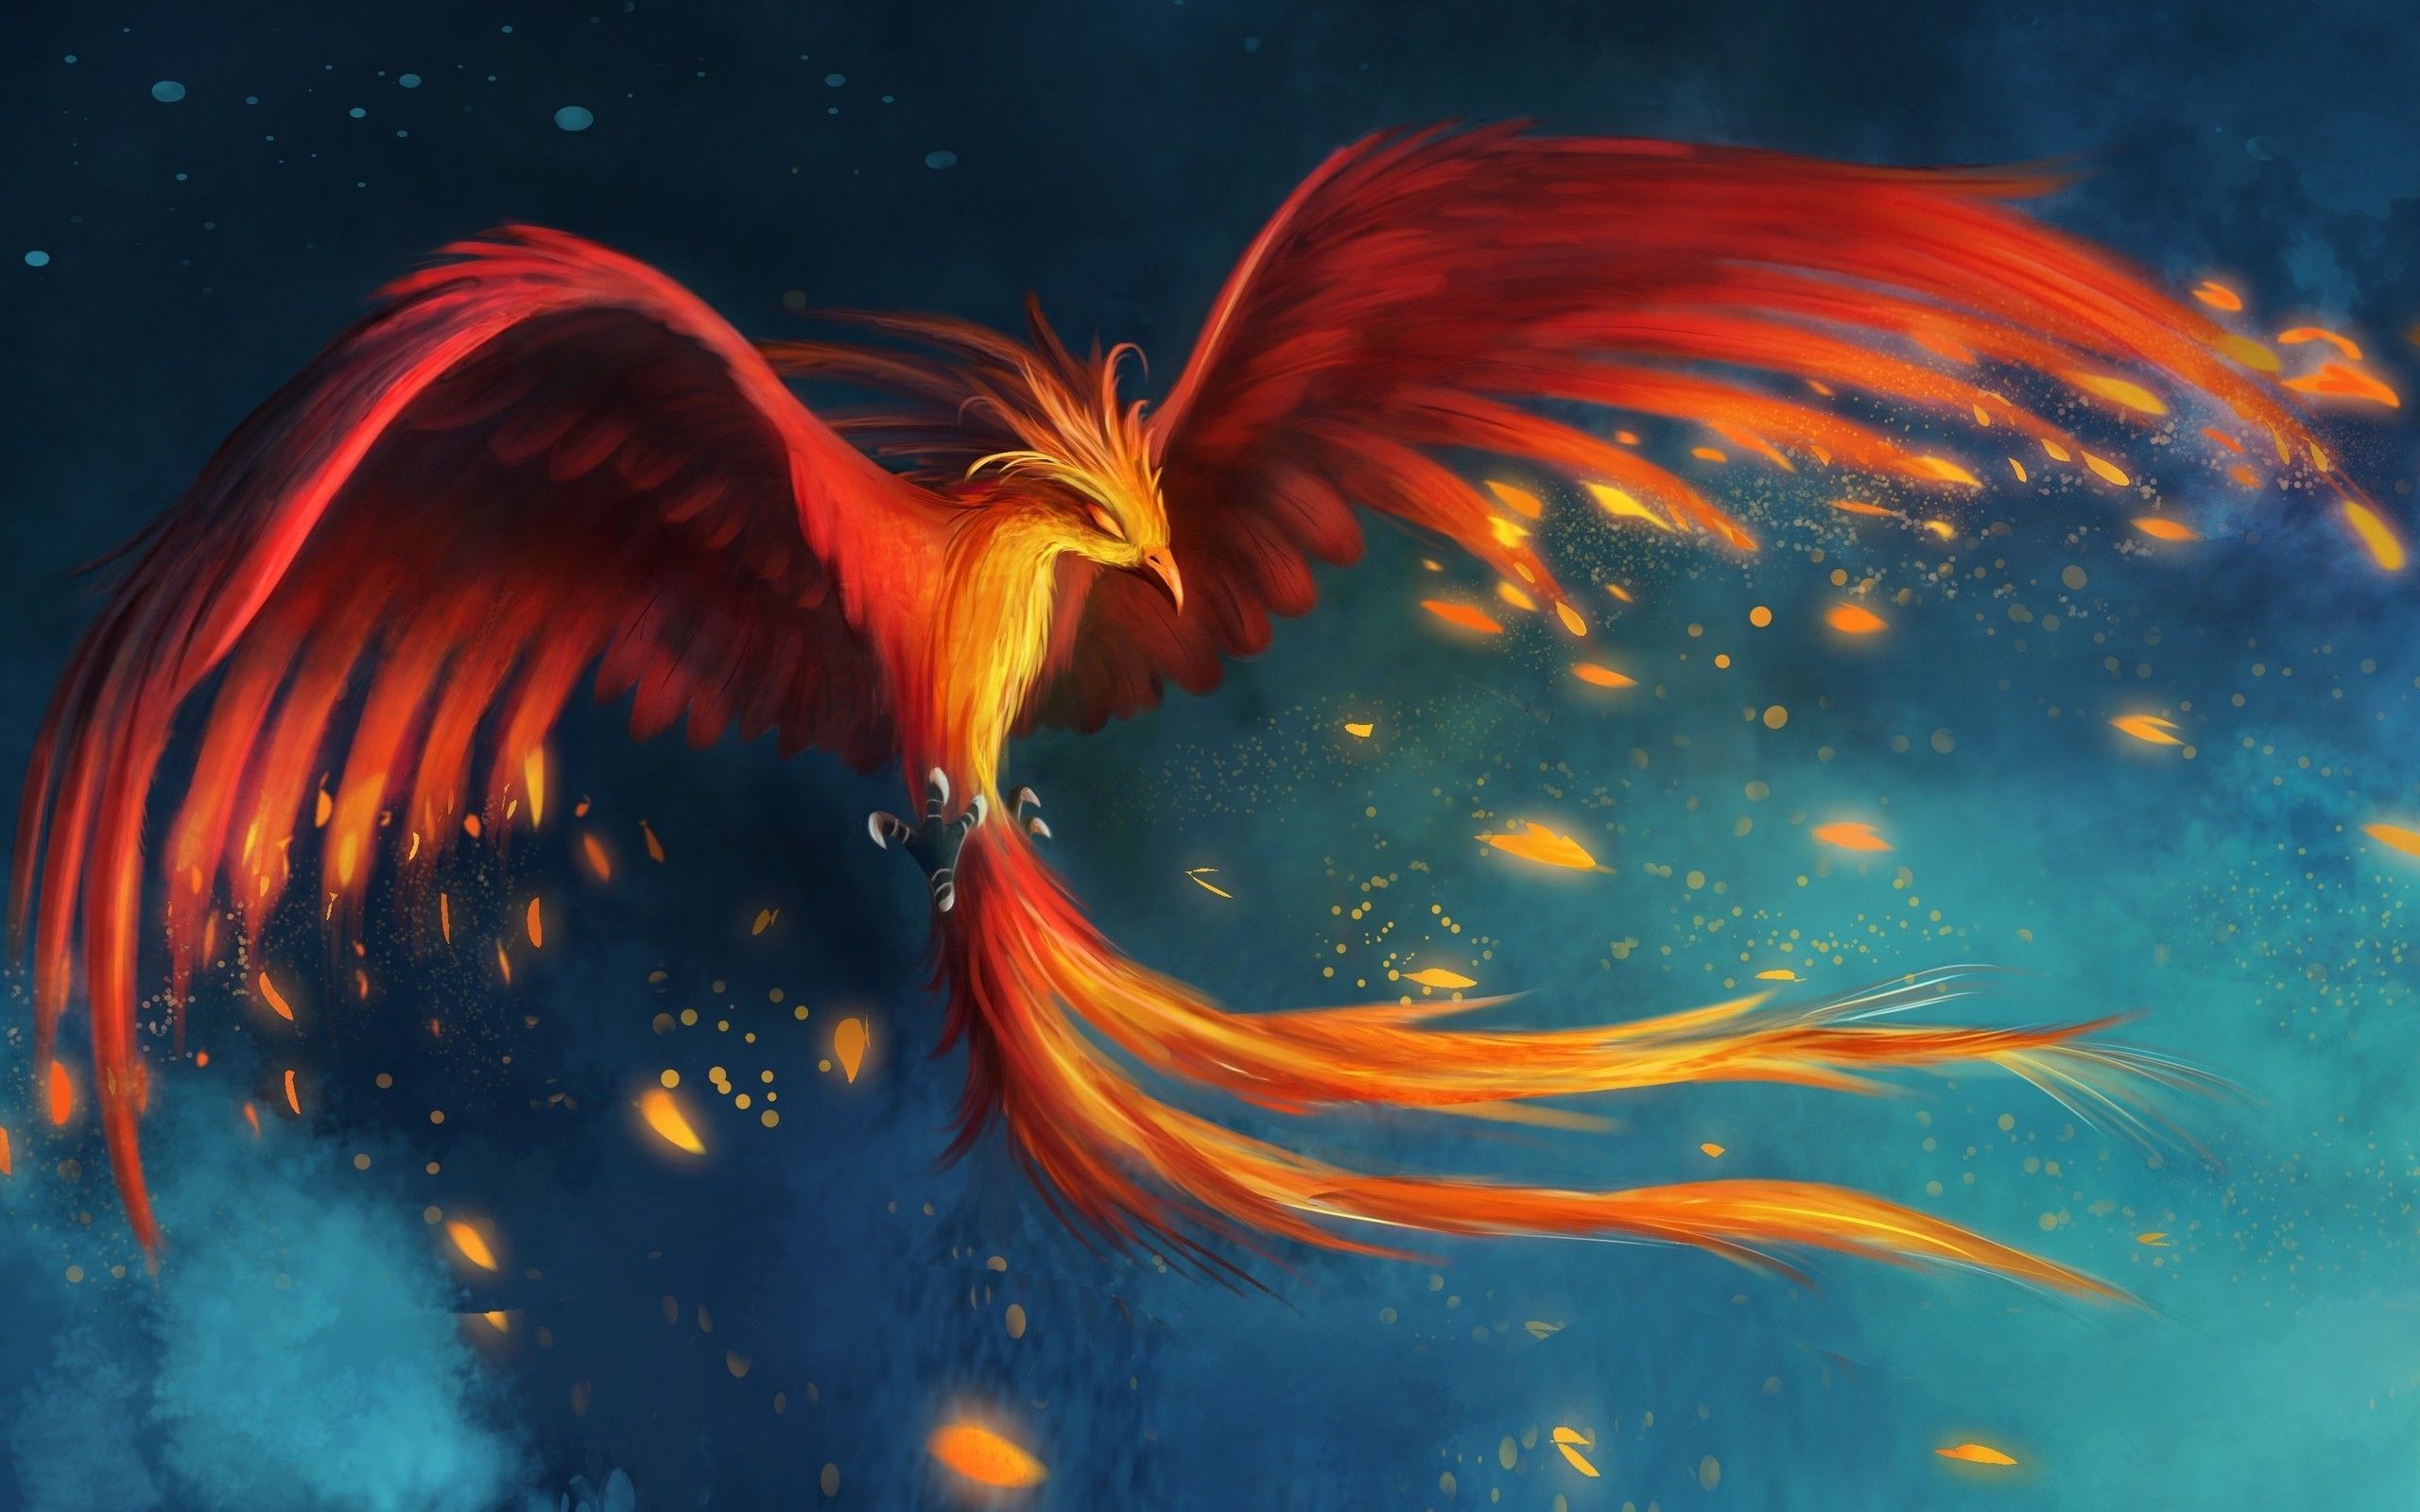 Le Phoenix mythique expand ses ailes enflammées et prend son envol.